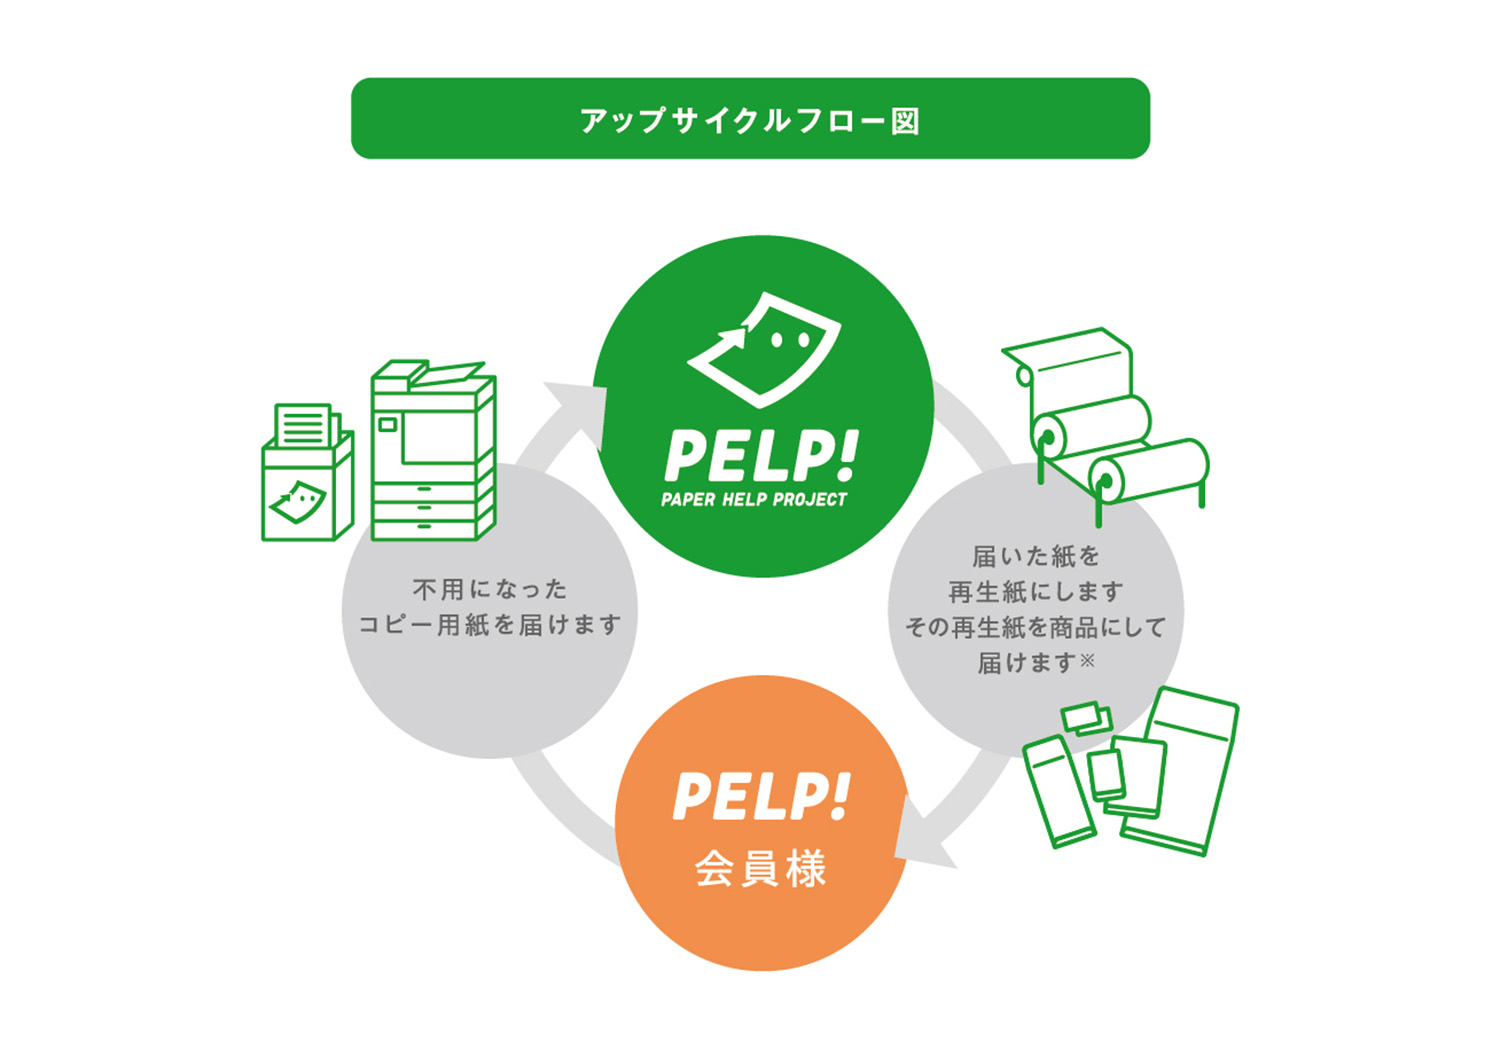 PELP! は、不用になったコピー用紙をアップサイクルするサービスです